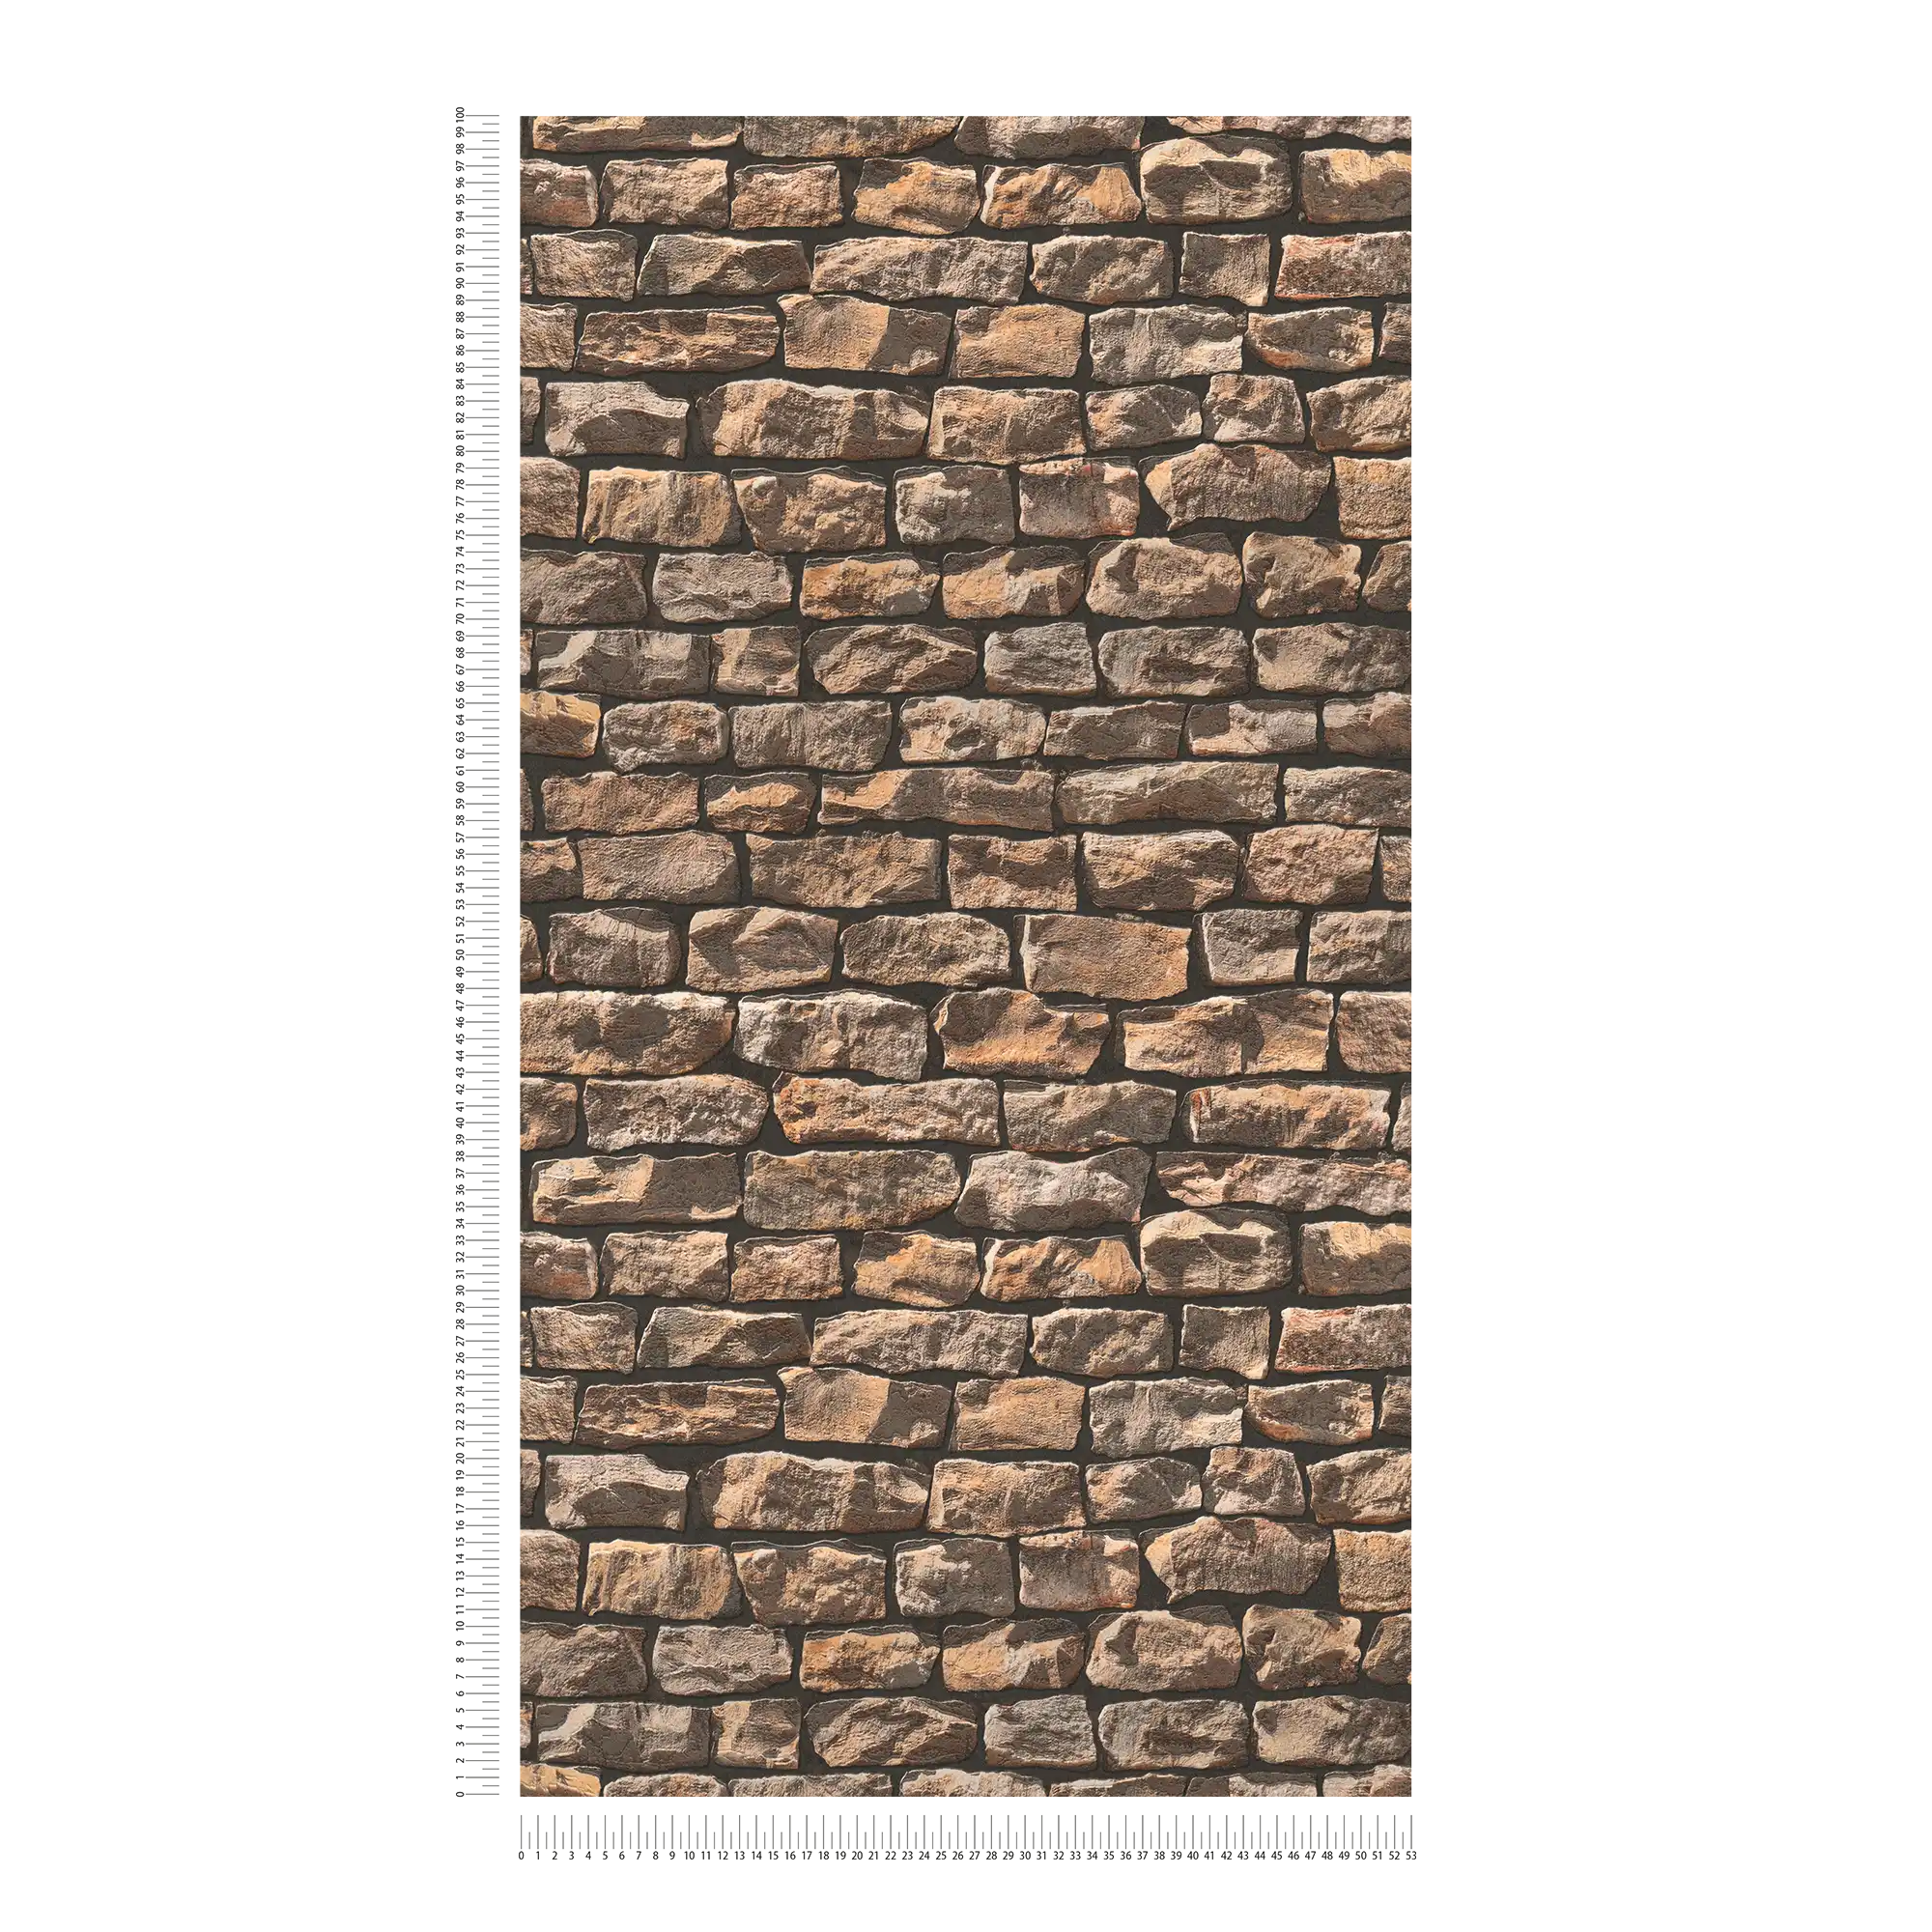             Carta da parati in muratura con pietre naturali realistiche - marrone, beige, nero
        